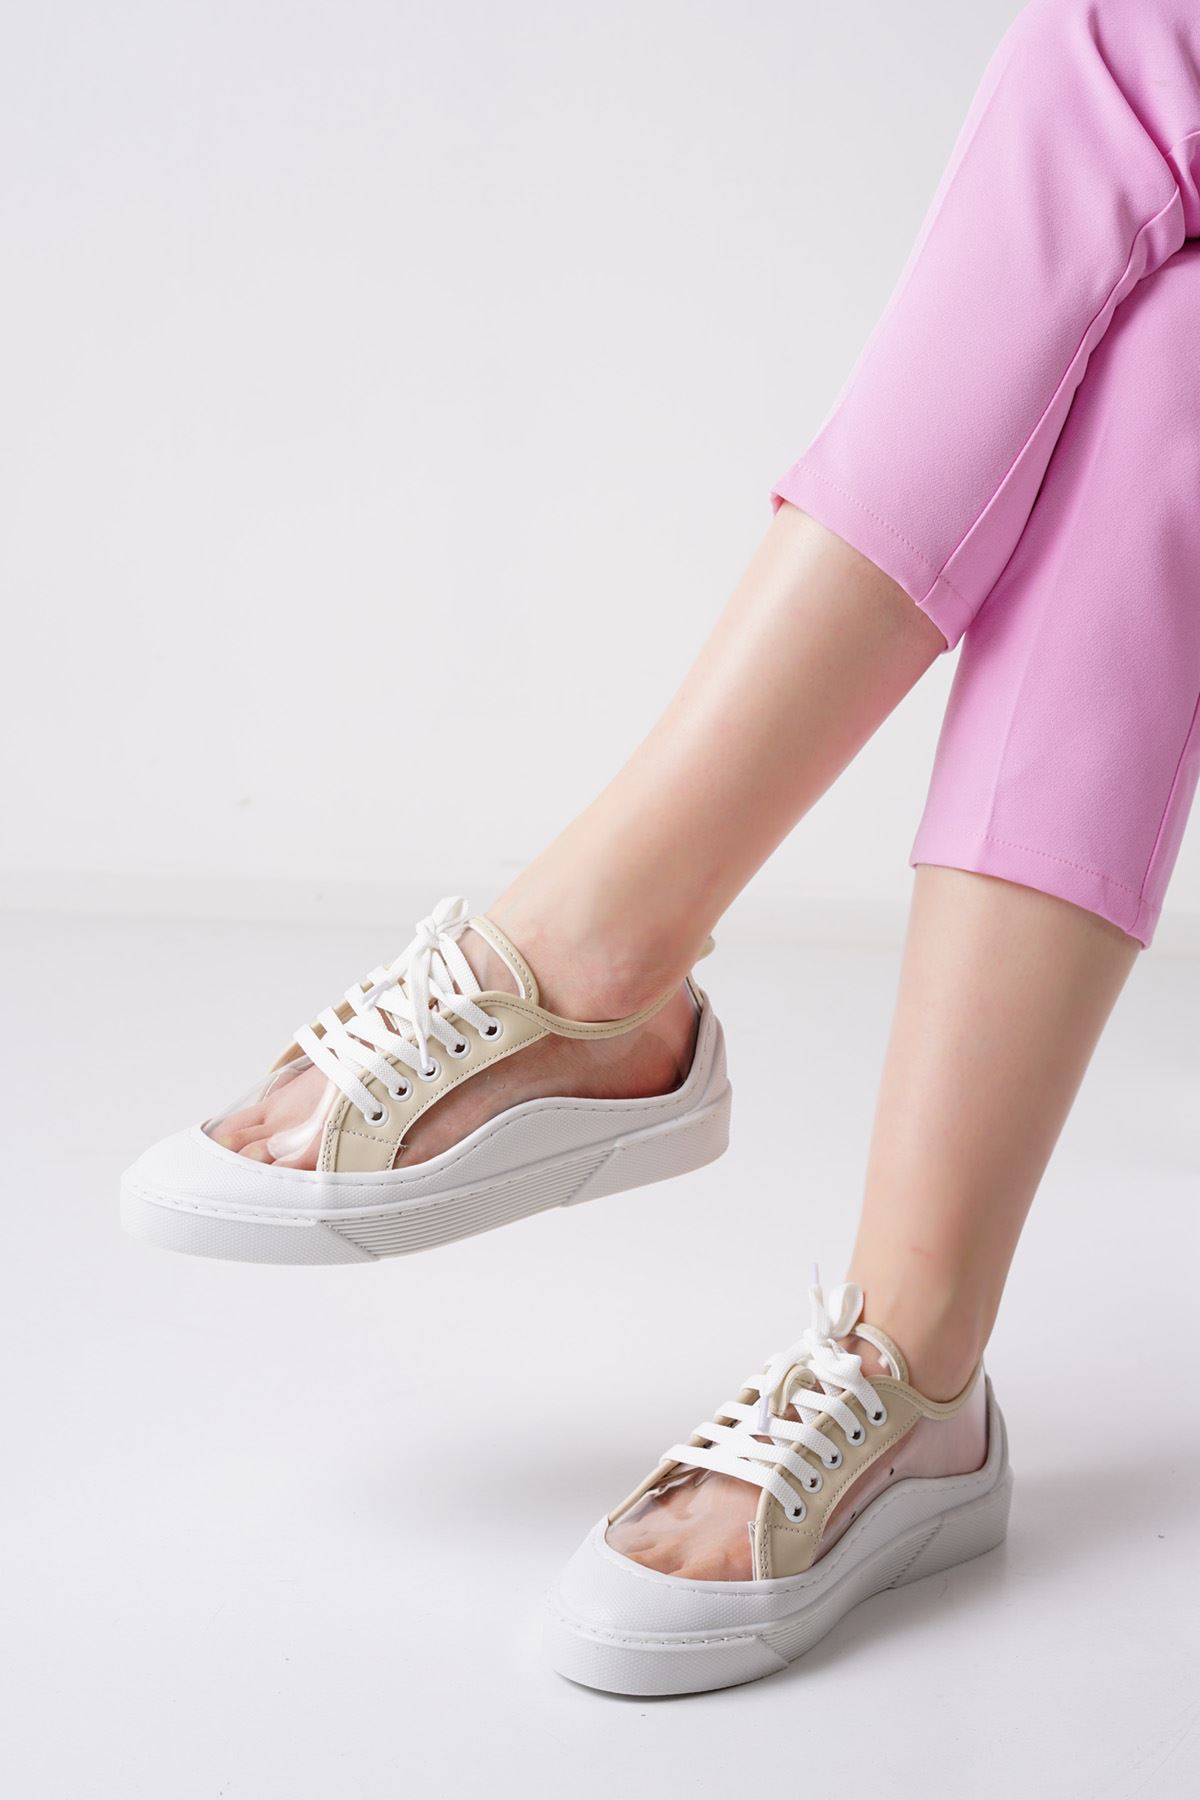 Flufy Beyaz Bej Şeffaf Kadın Spor Ayakkabı